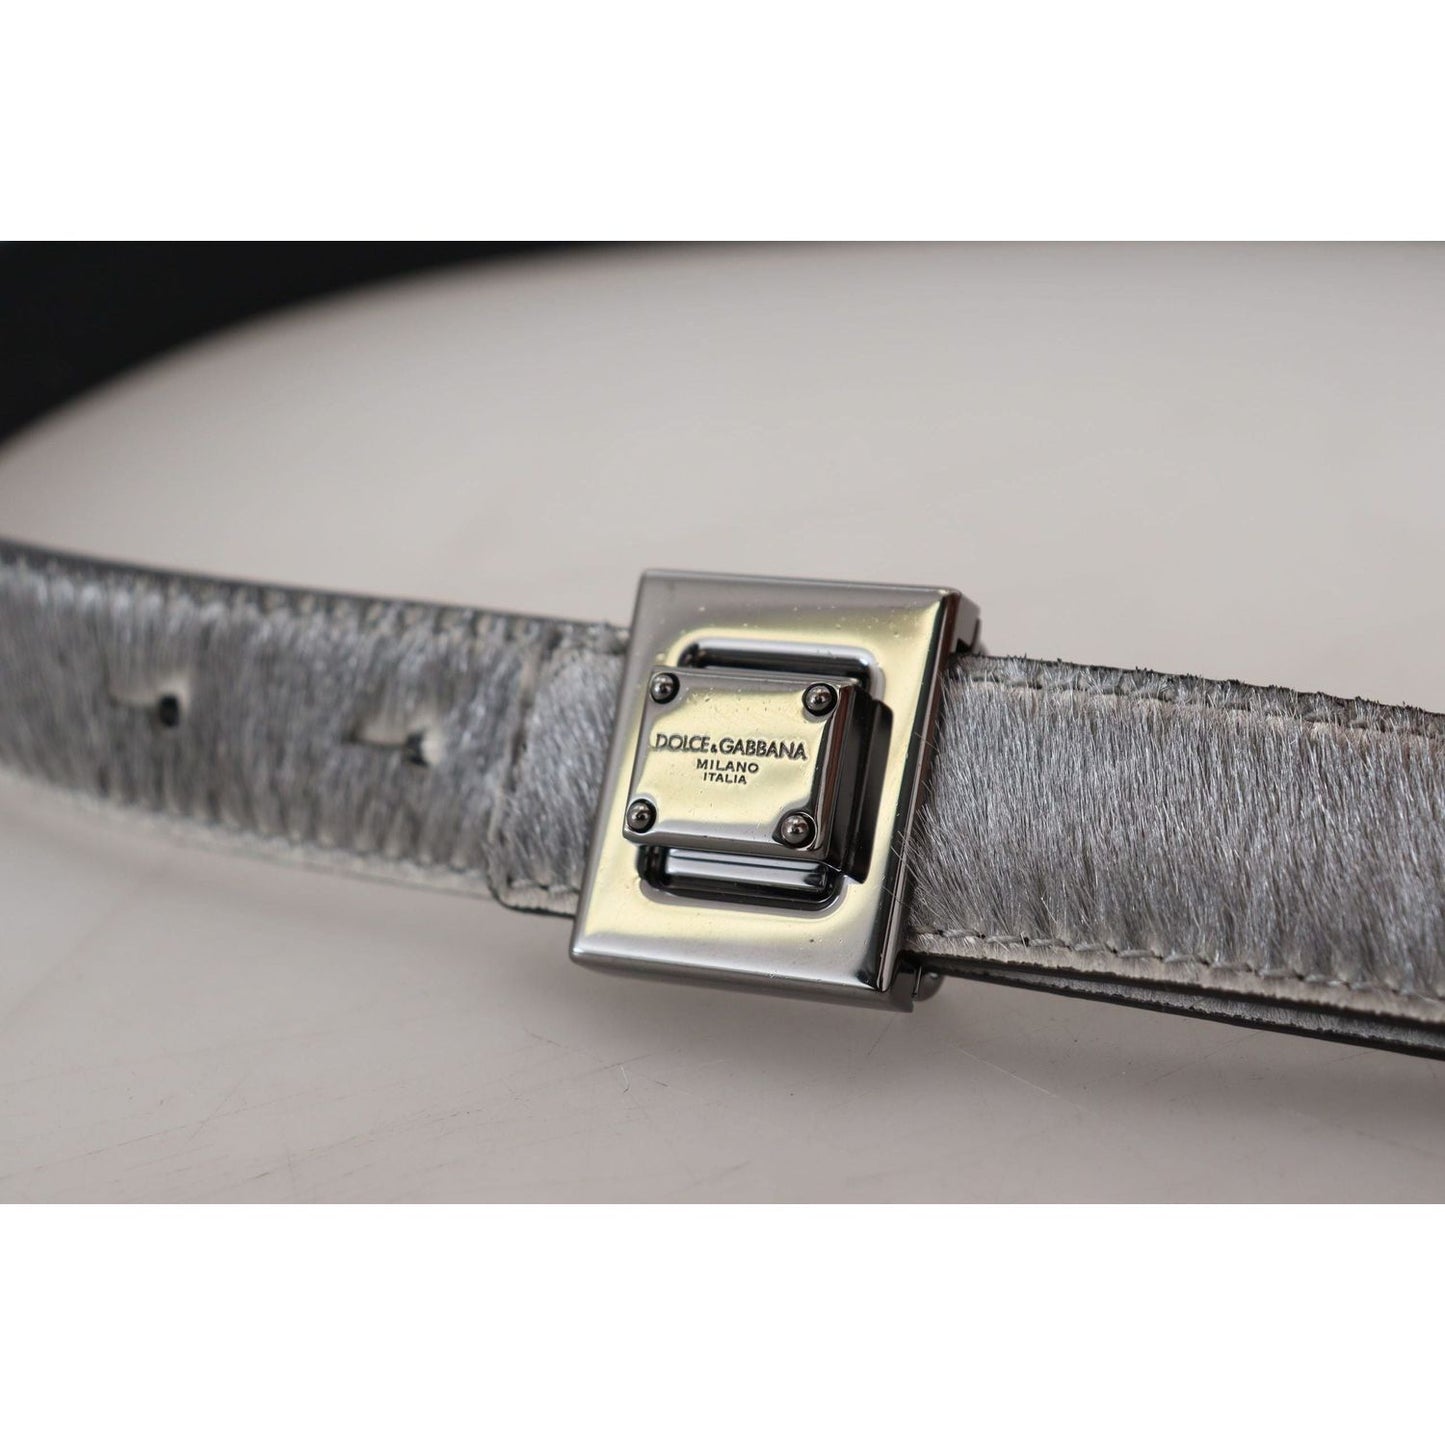 Dolce & Gabbana Elegant Silver Leather Designer Belt silver-leather-tone-square-metal-buckle IMG_2392-scaled-3af50dbb-1ba.jpg